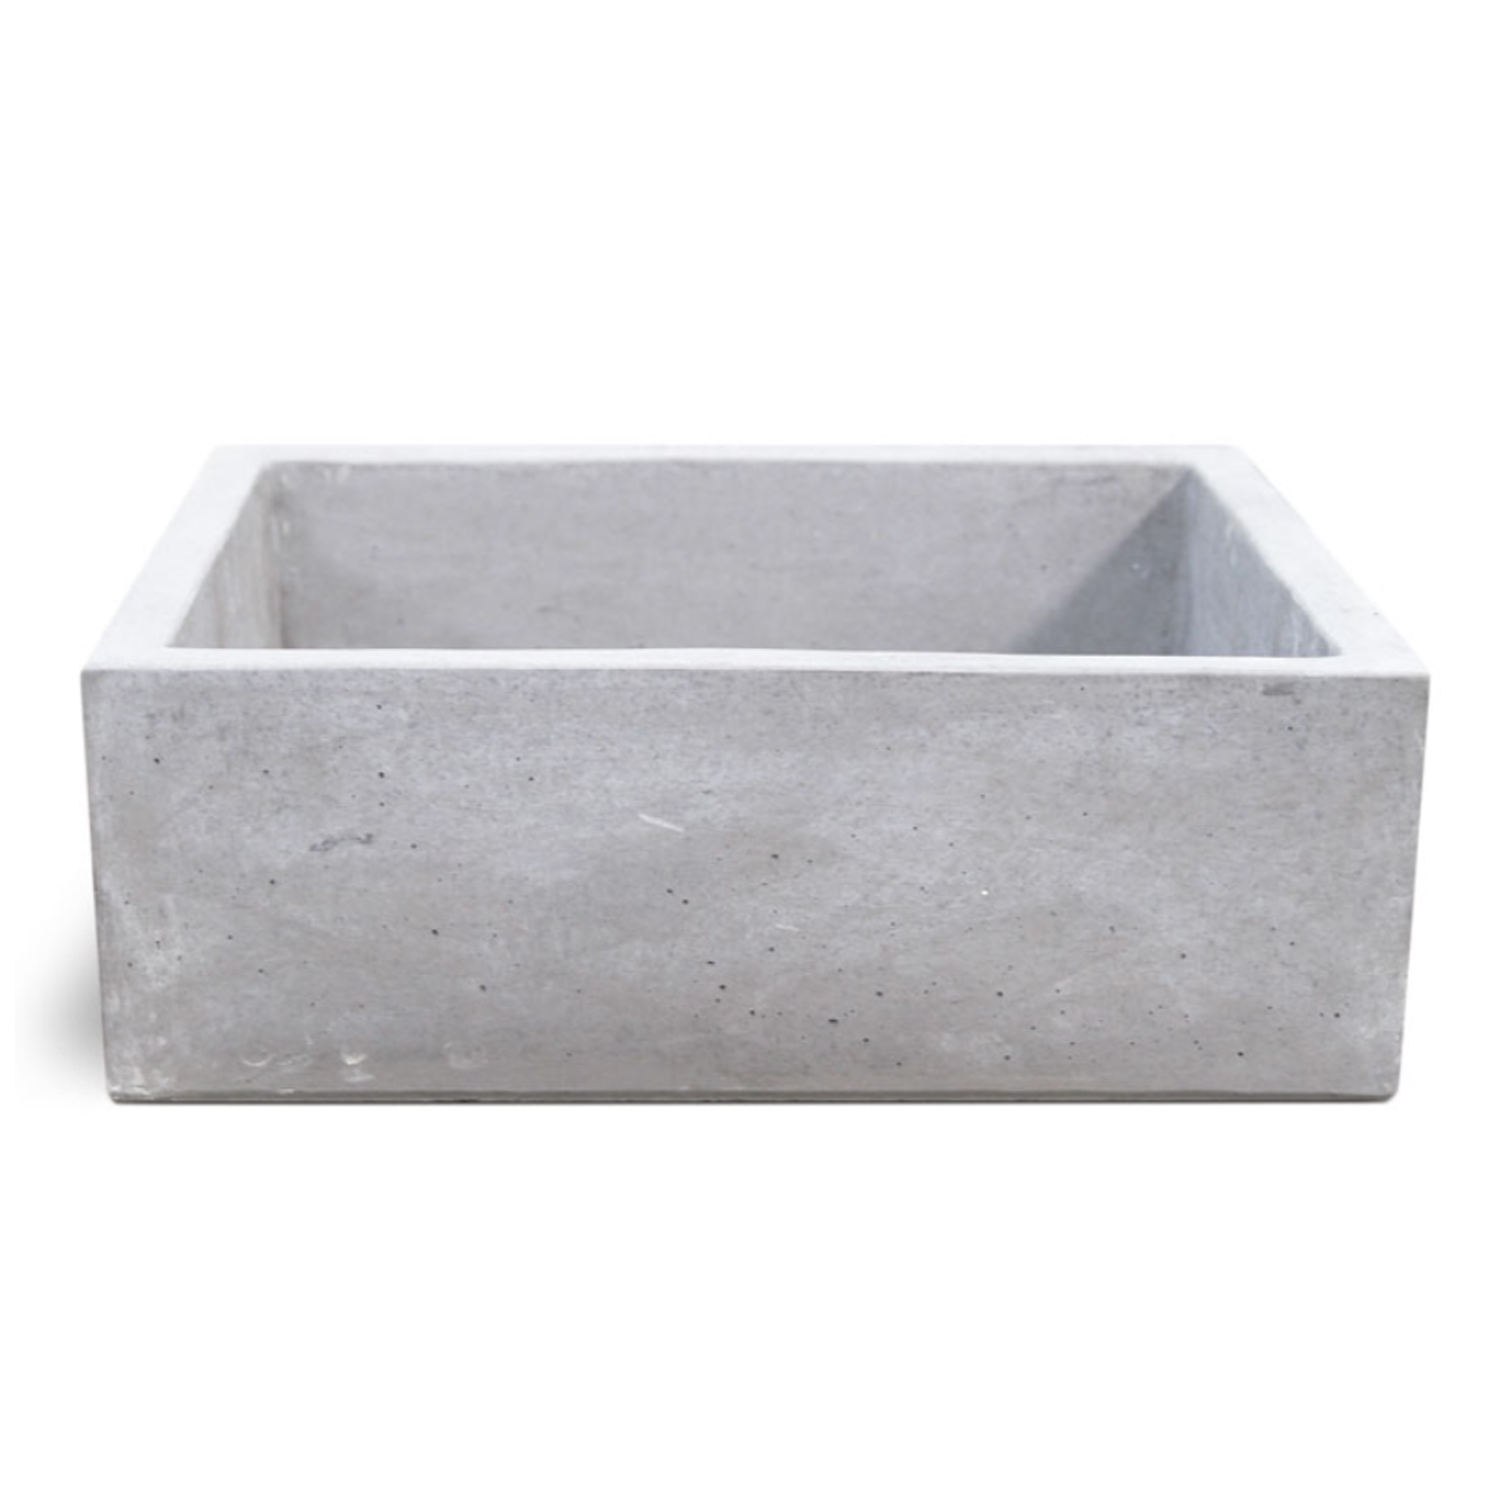 Lavello da esterno in cemento martellinato grigio cm 45x42x16h cm modello  Navarra